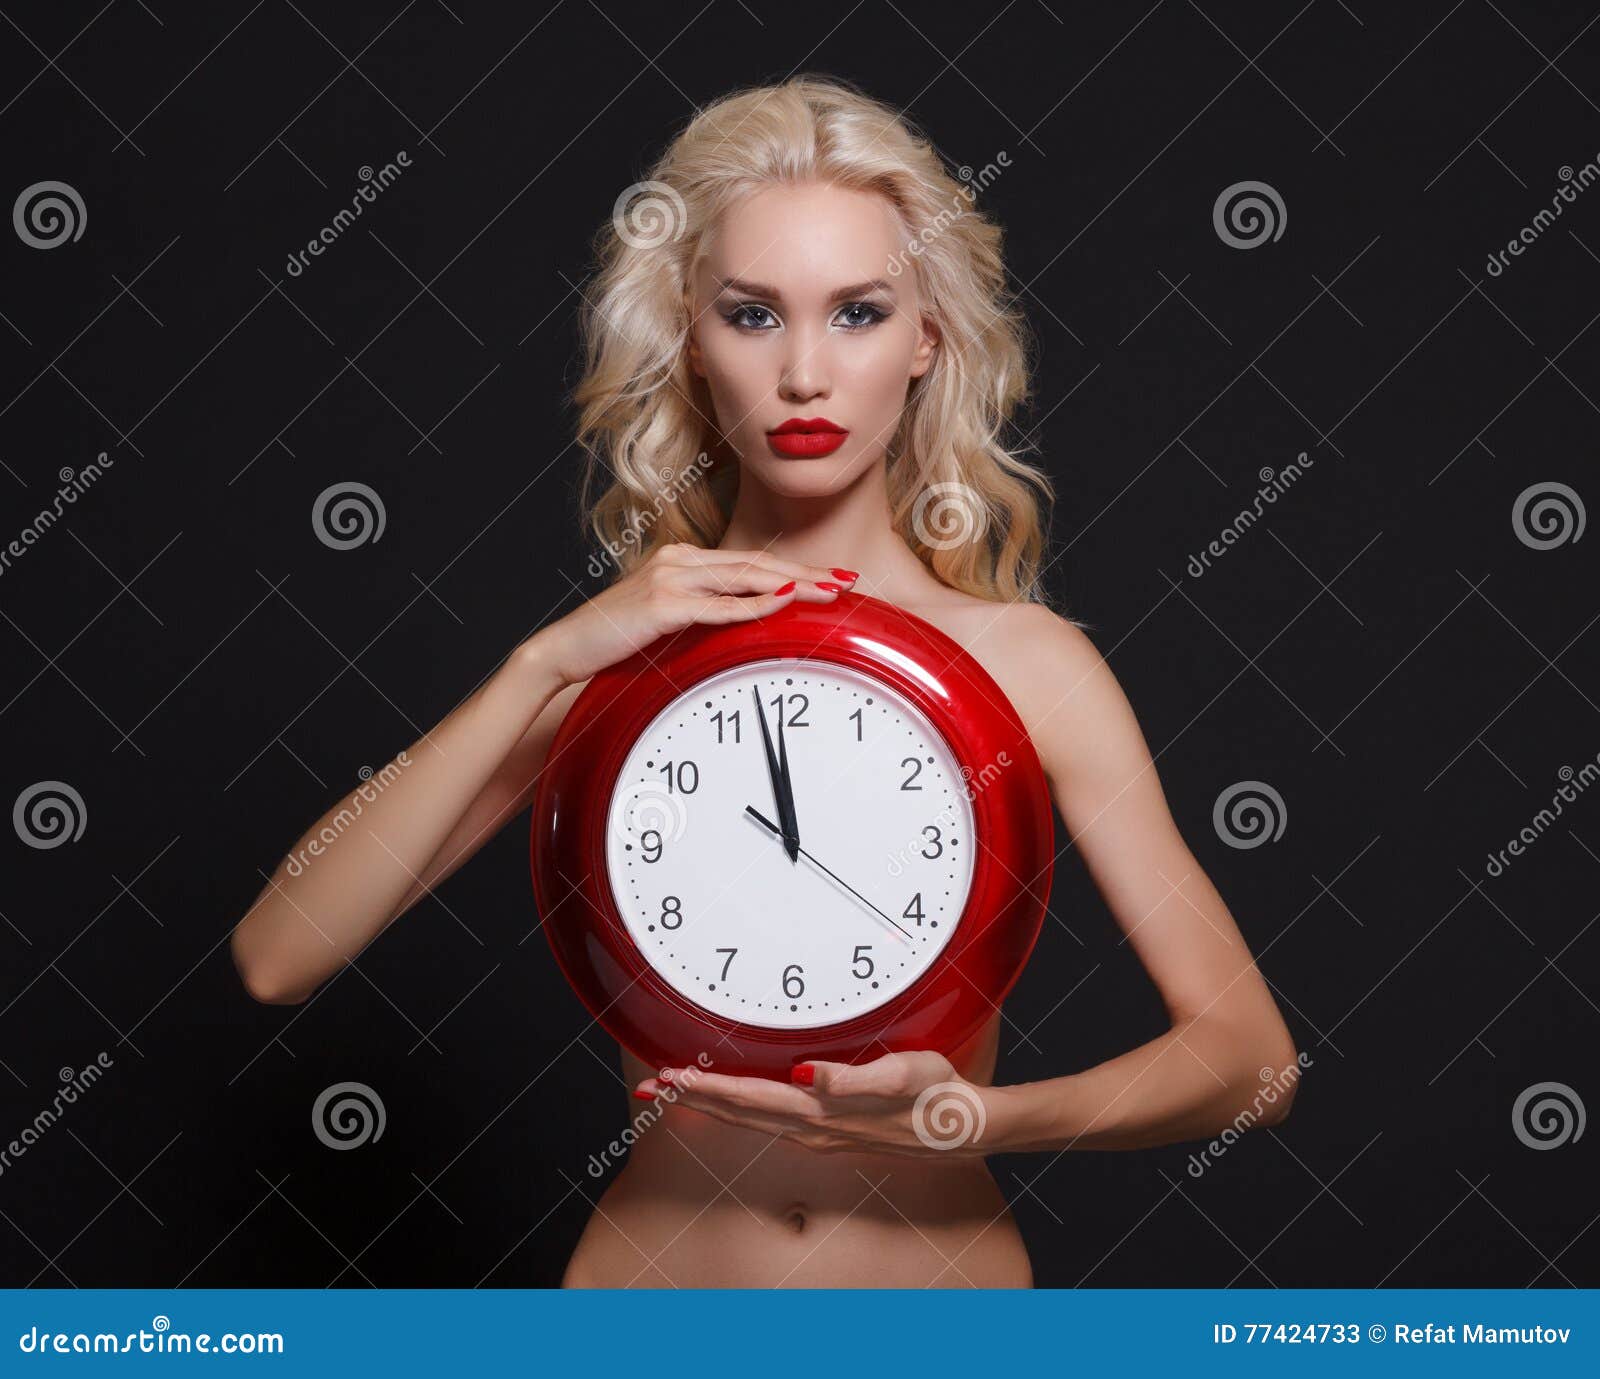 часы с голыми девками фото 11